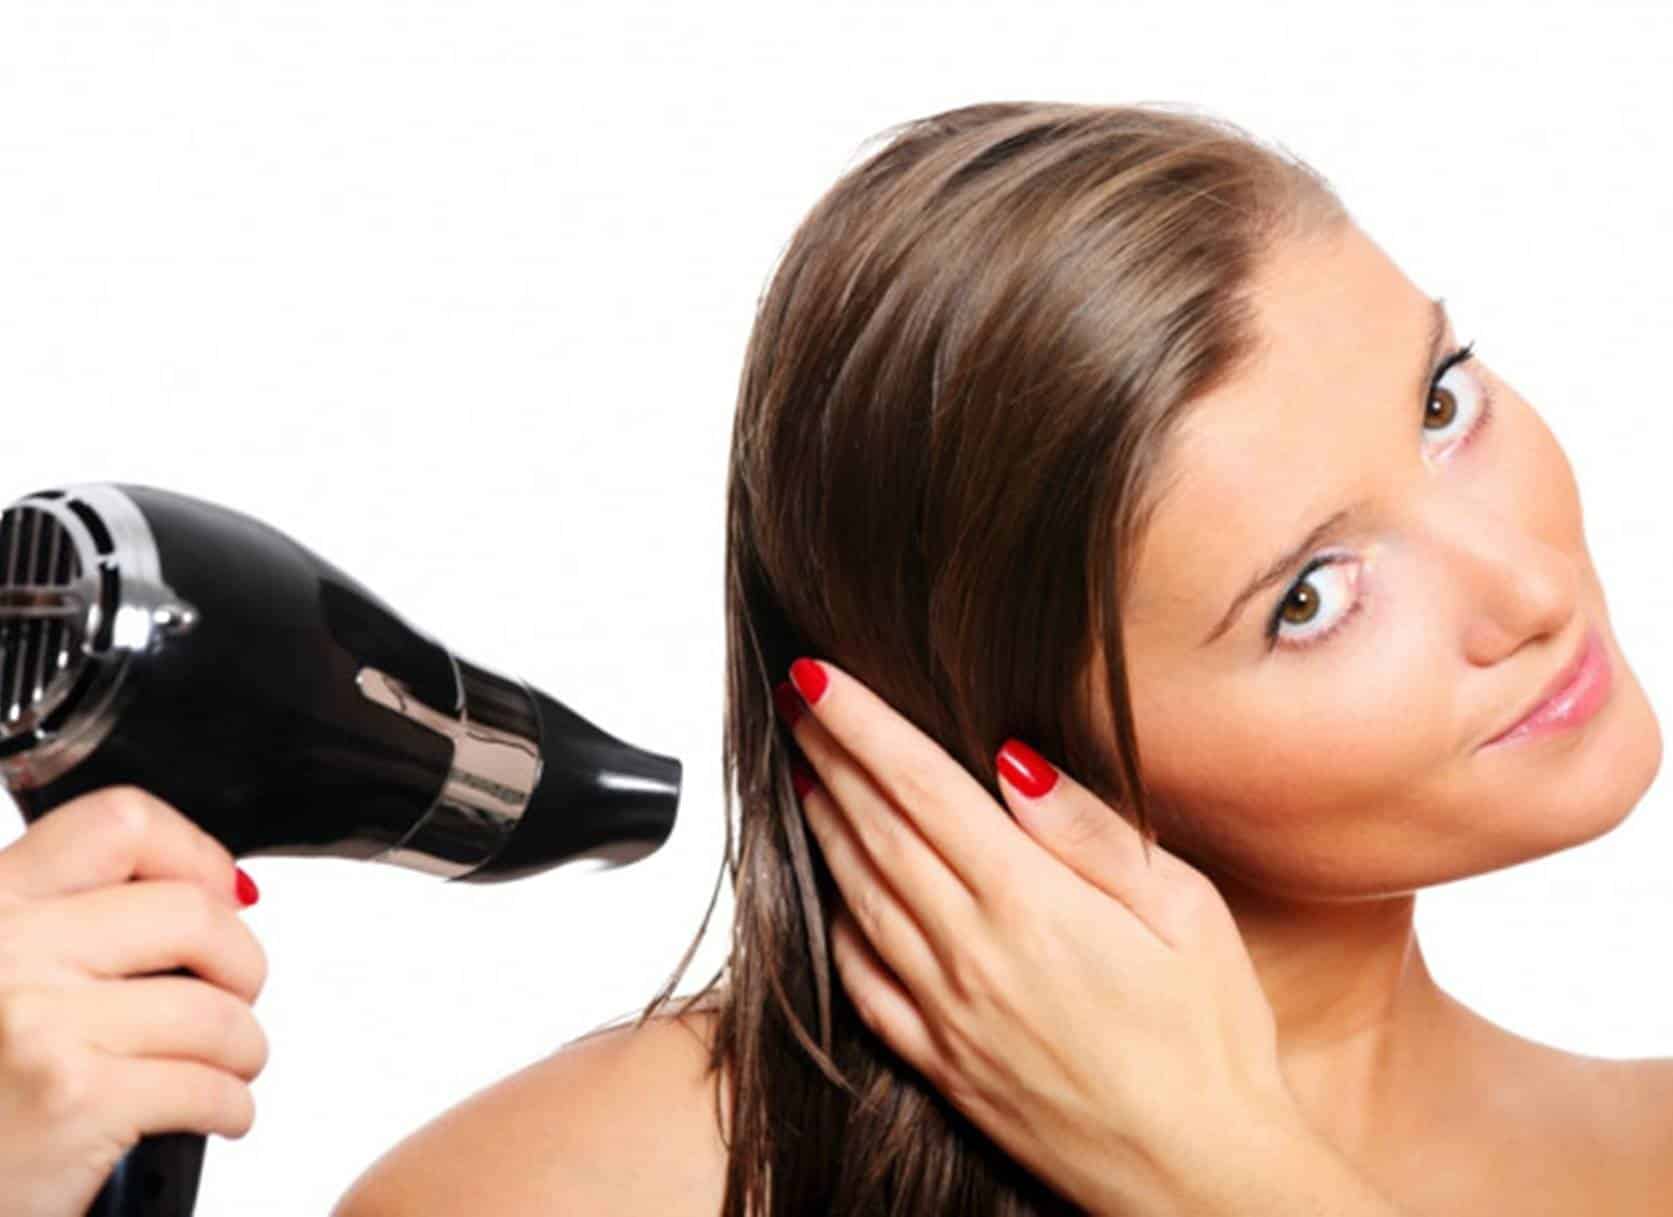 Como secar o cabelo corretamente com um secador e evitar danos